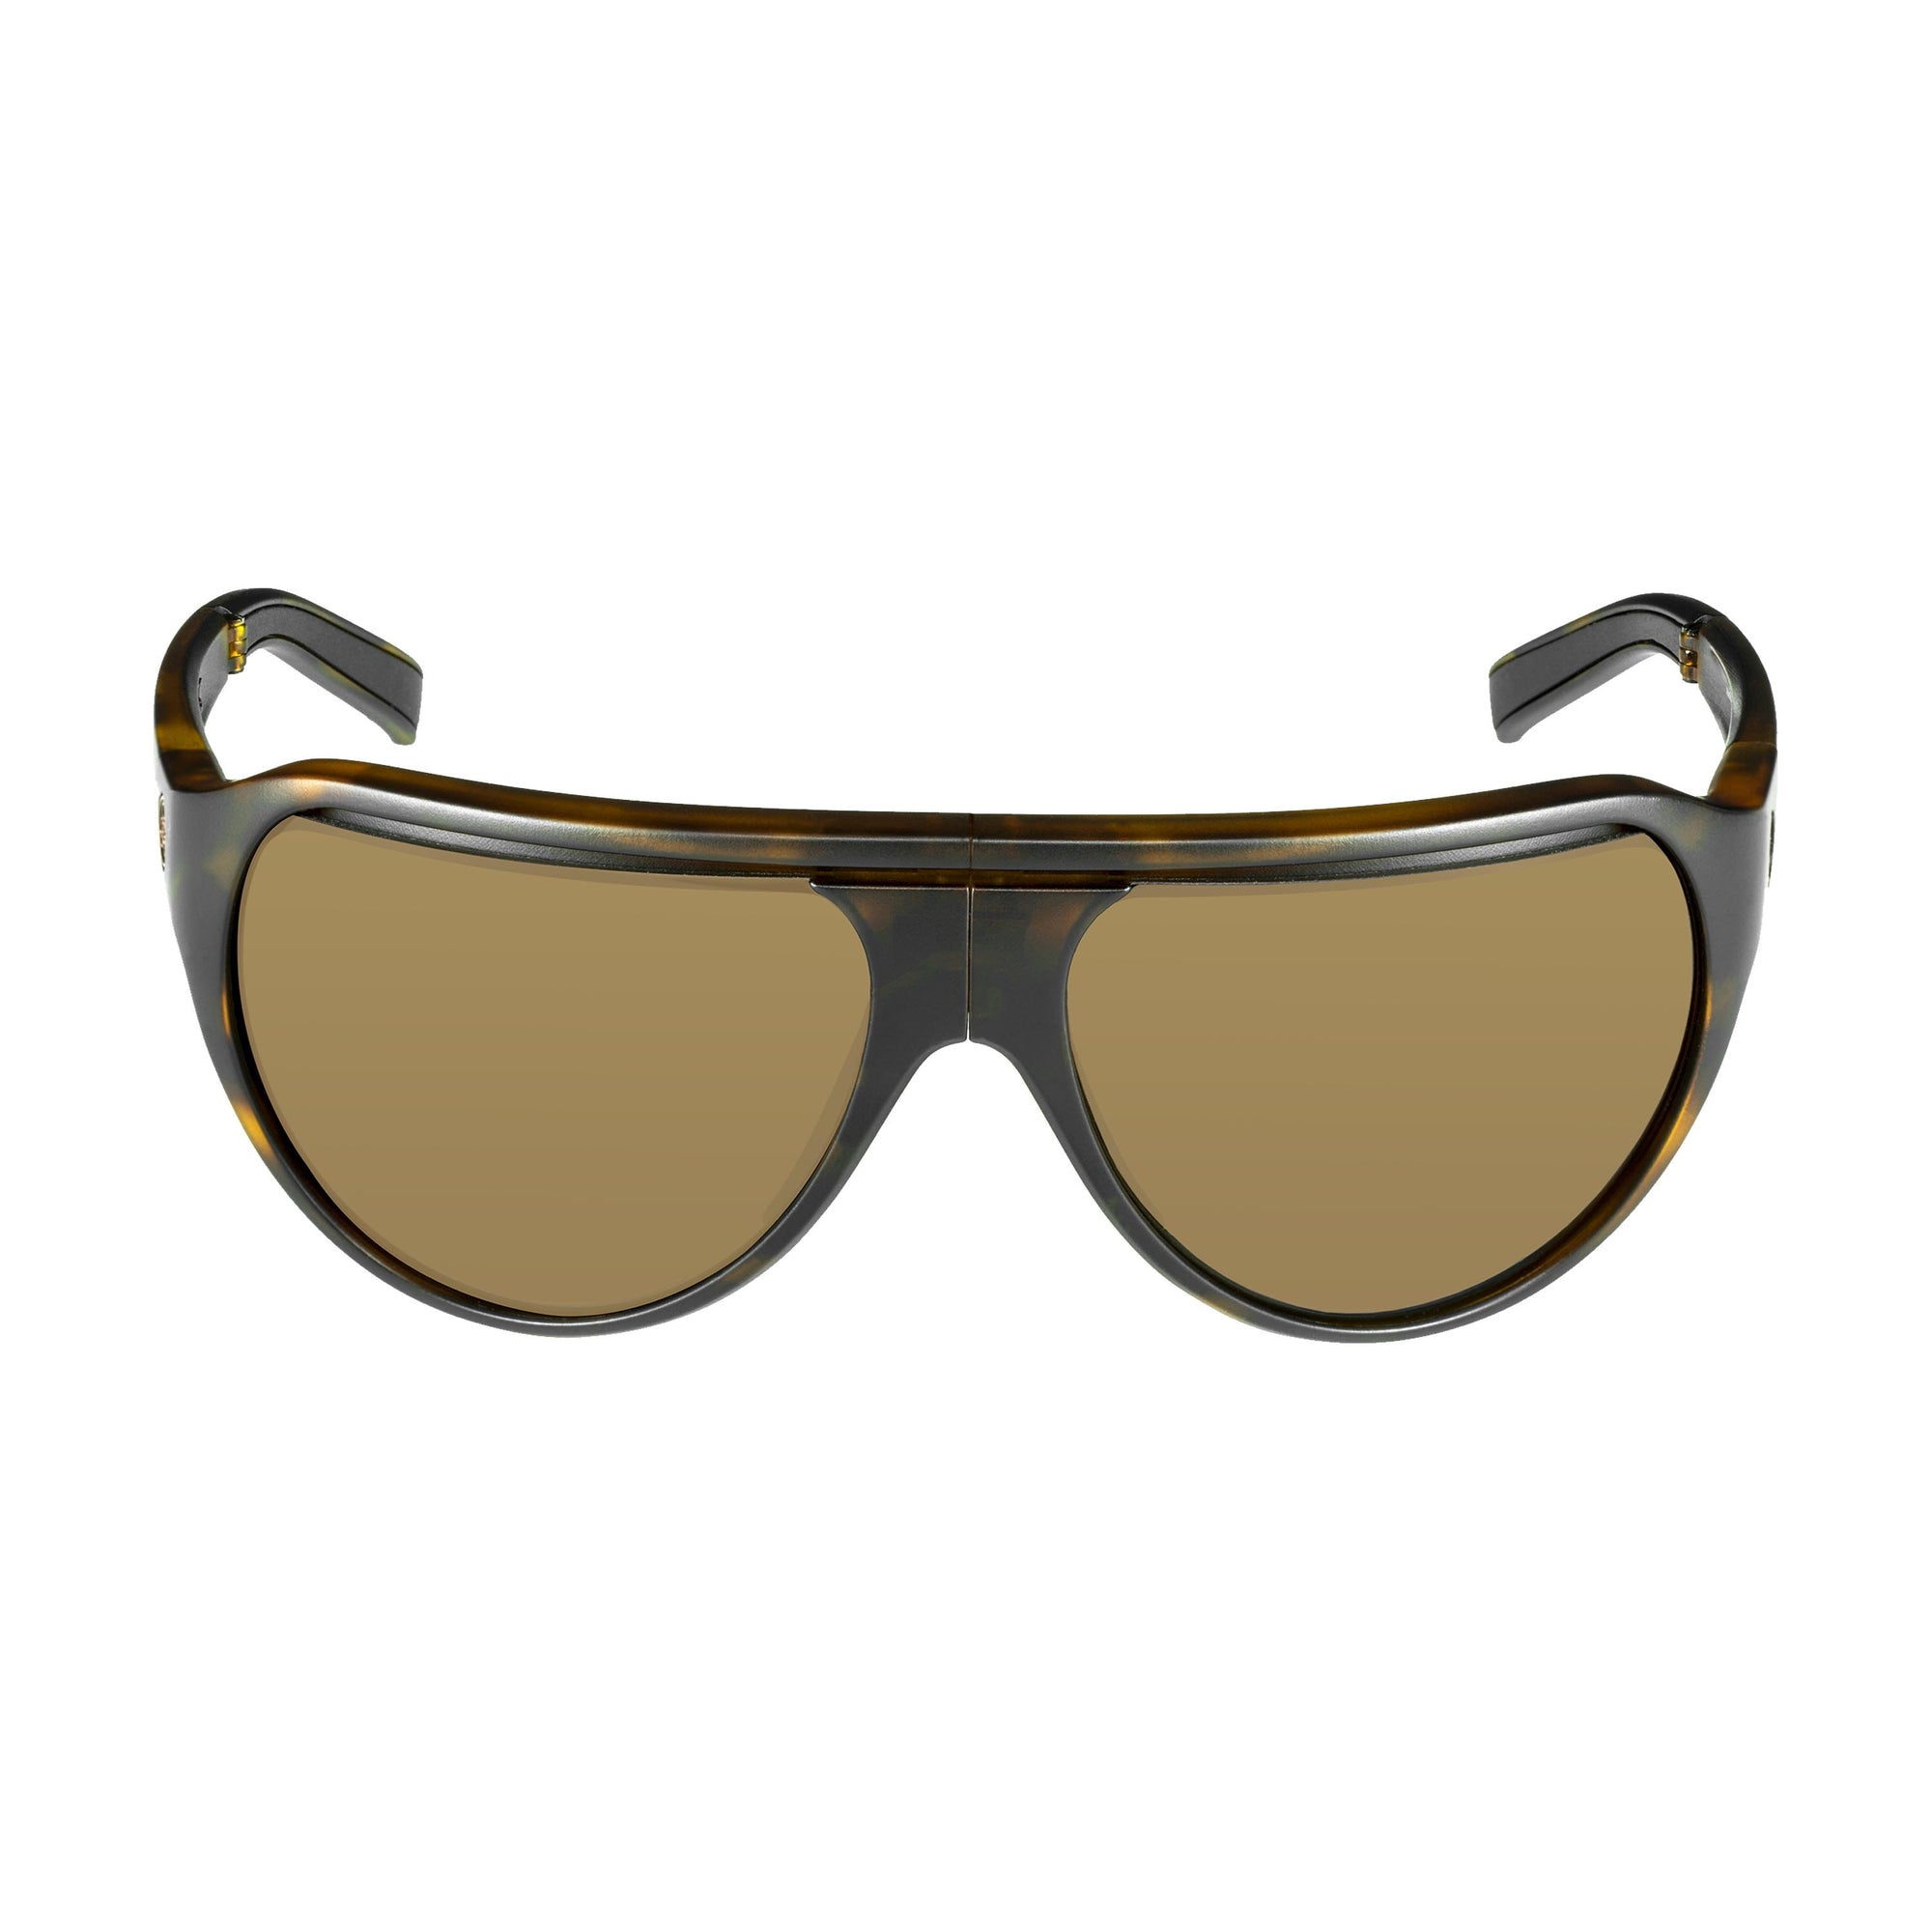 Popticals, Premium Compact Sunglasses, PopAir, 300010-CUNS, Standard Sunglasses, Matte Tortoise Frame, Brown Lenses, Front Tilt View